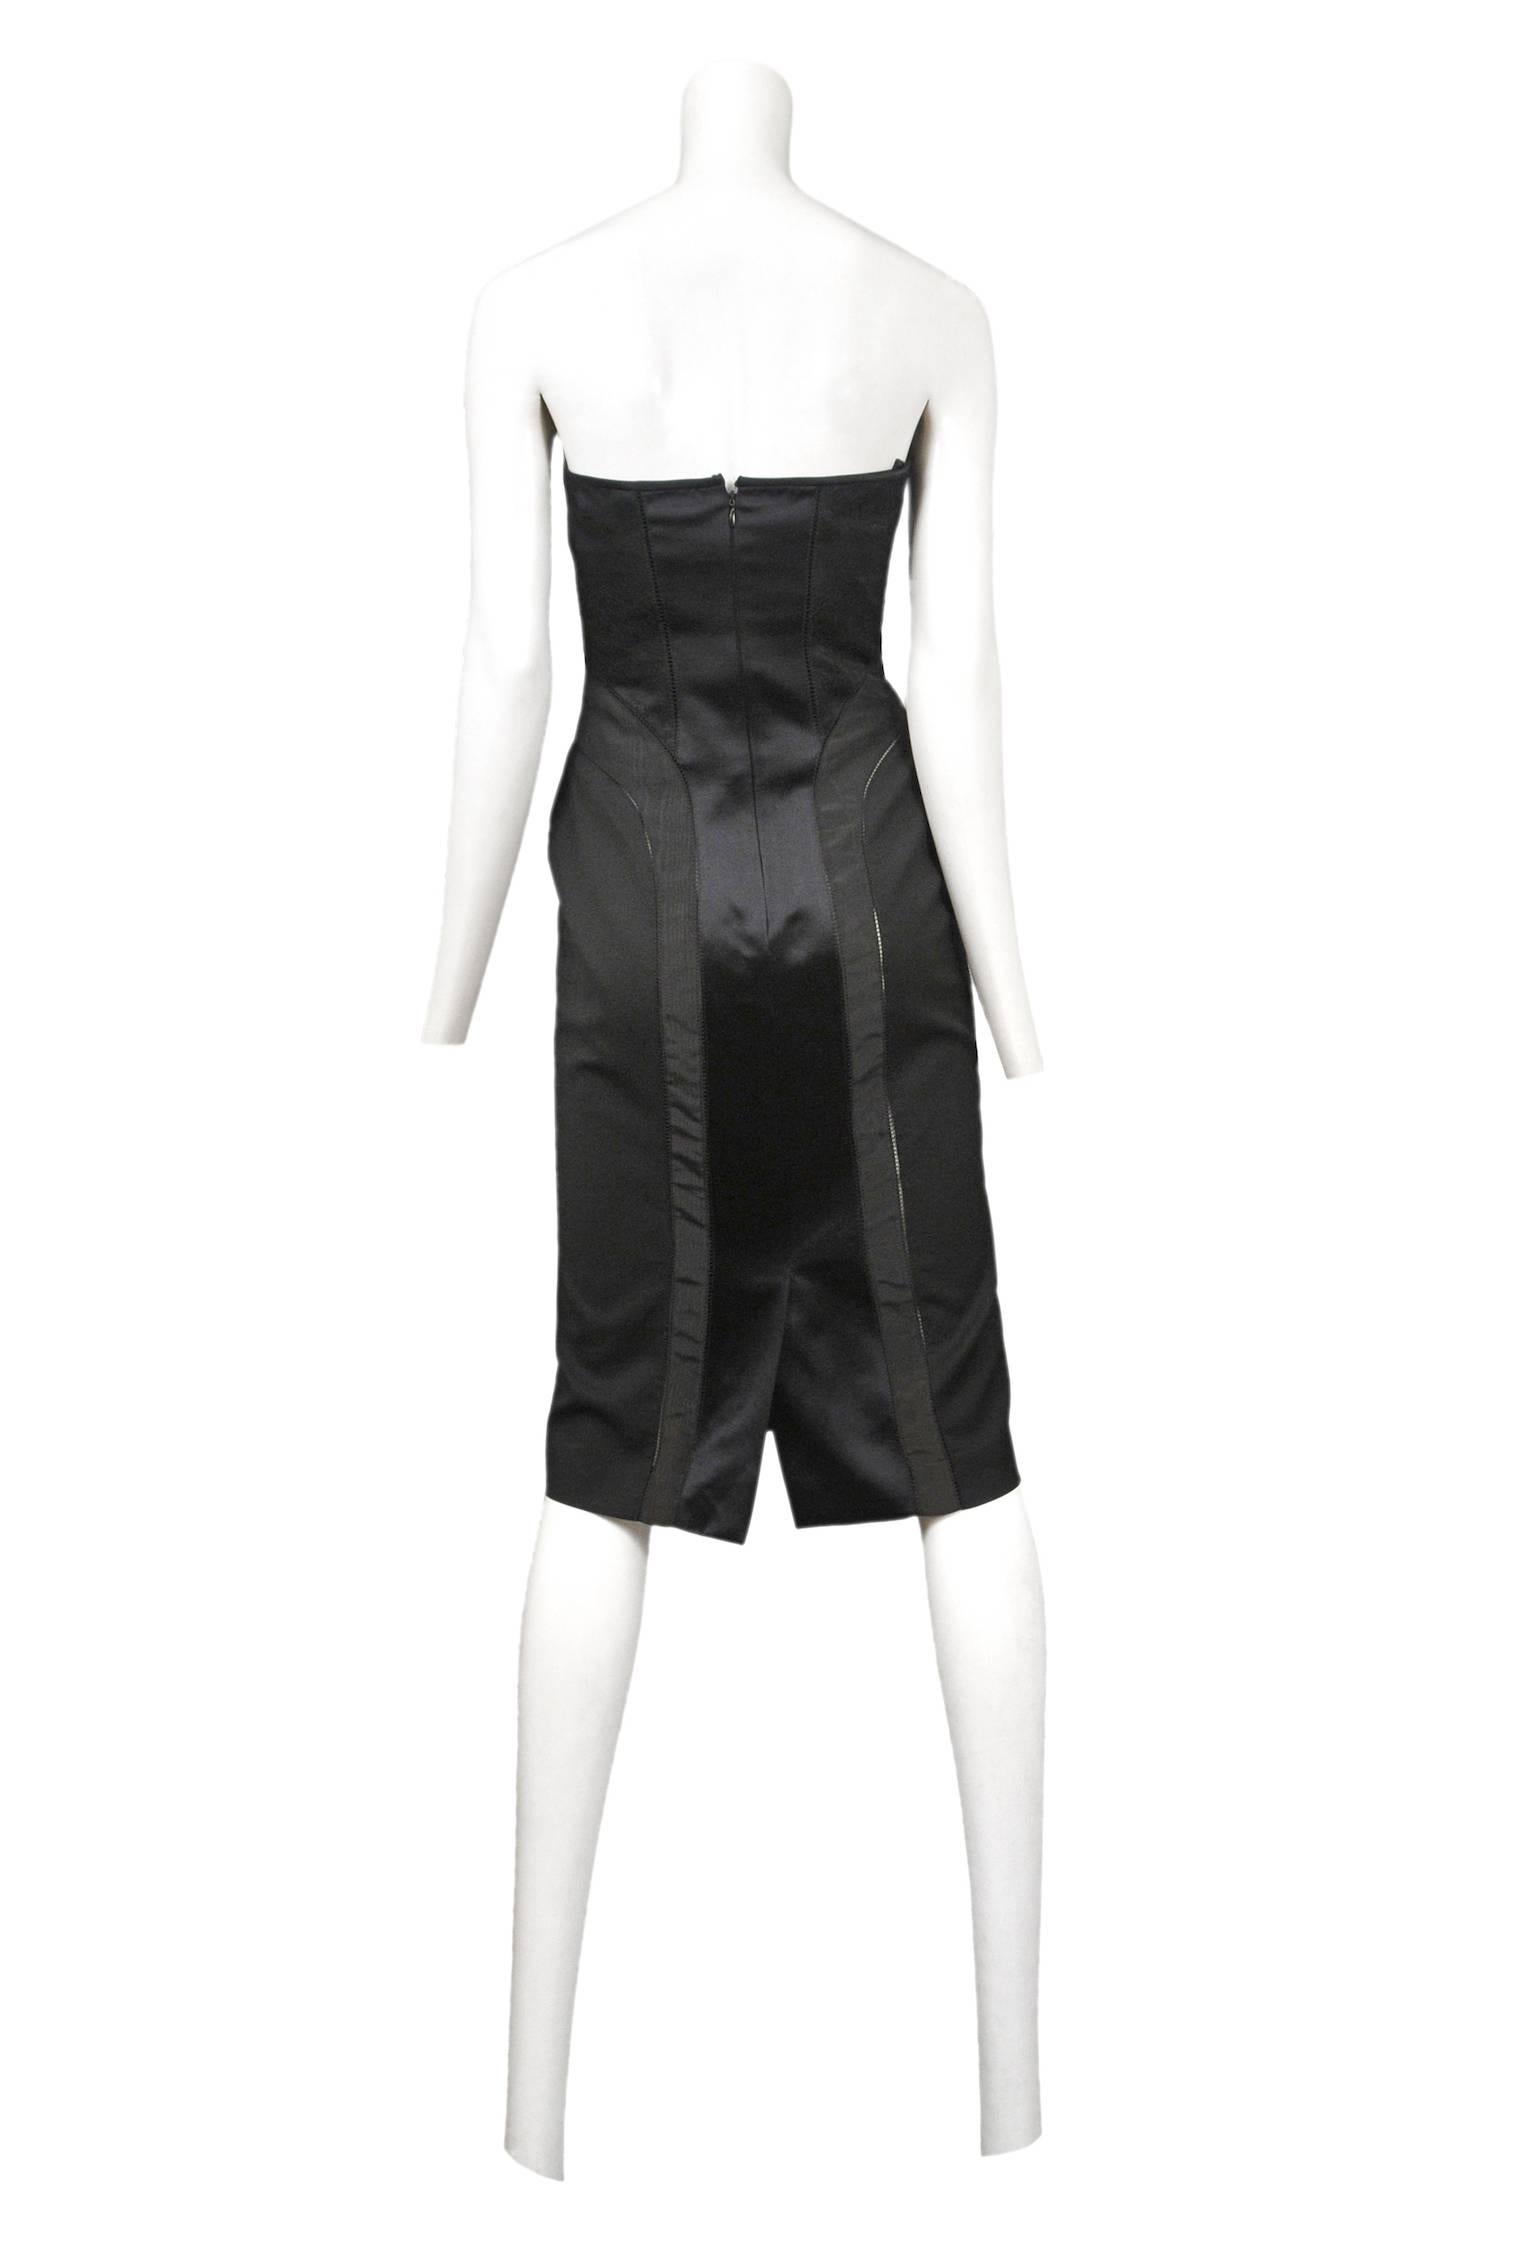 Black Alexnder McQueen Strapless Girdle Dress 2003